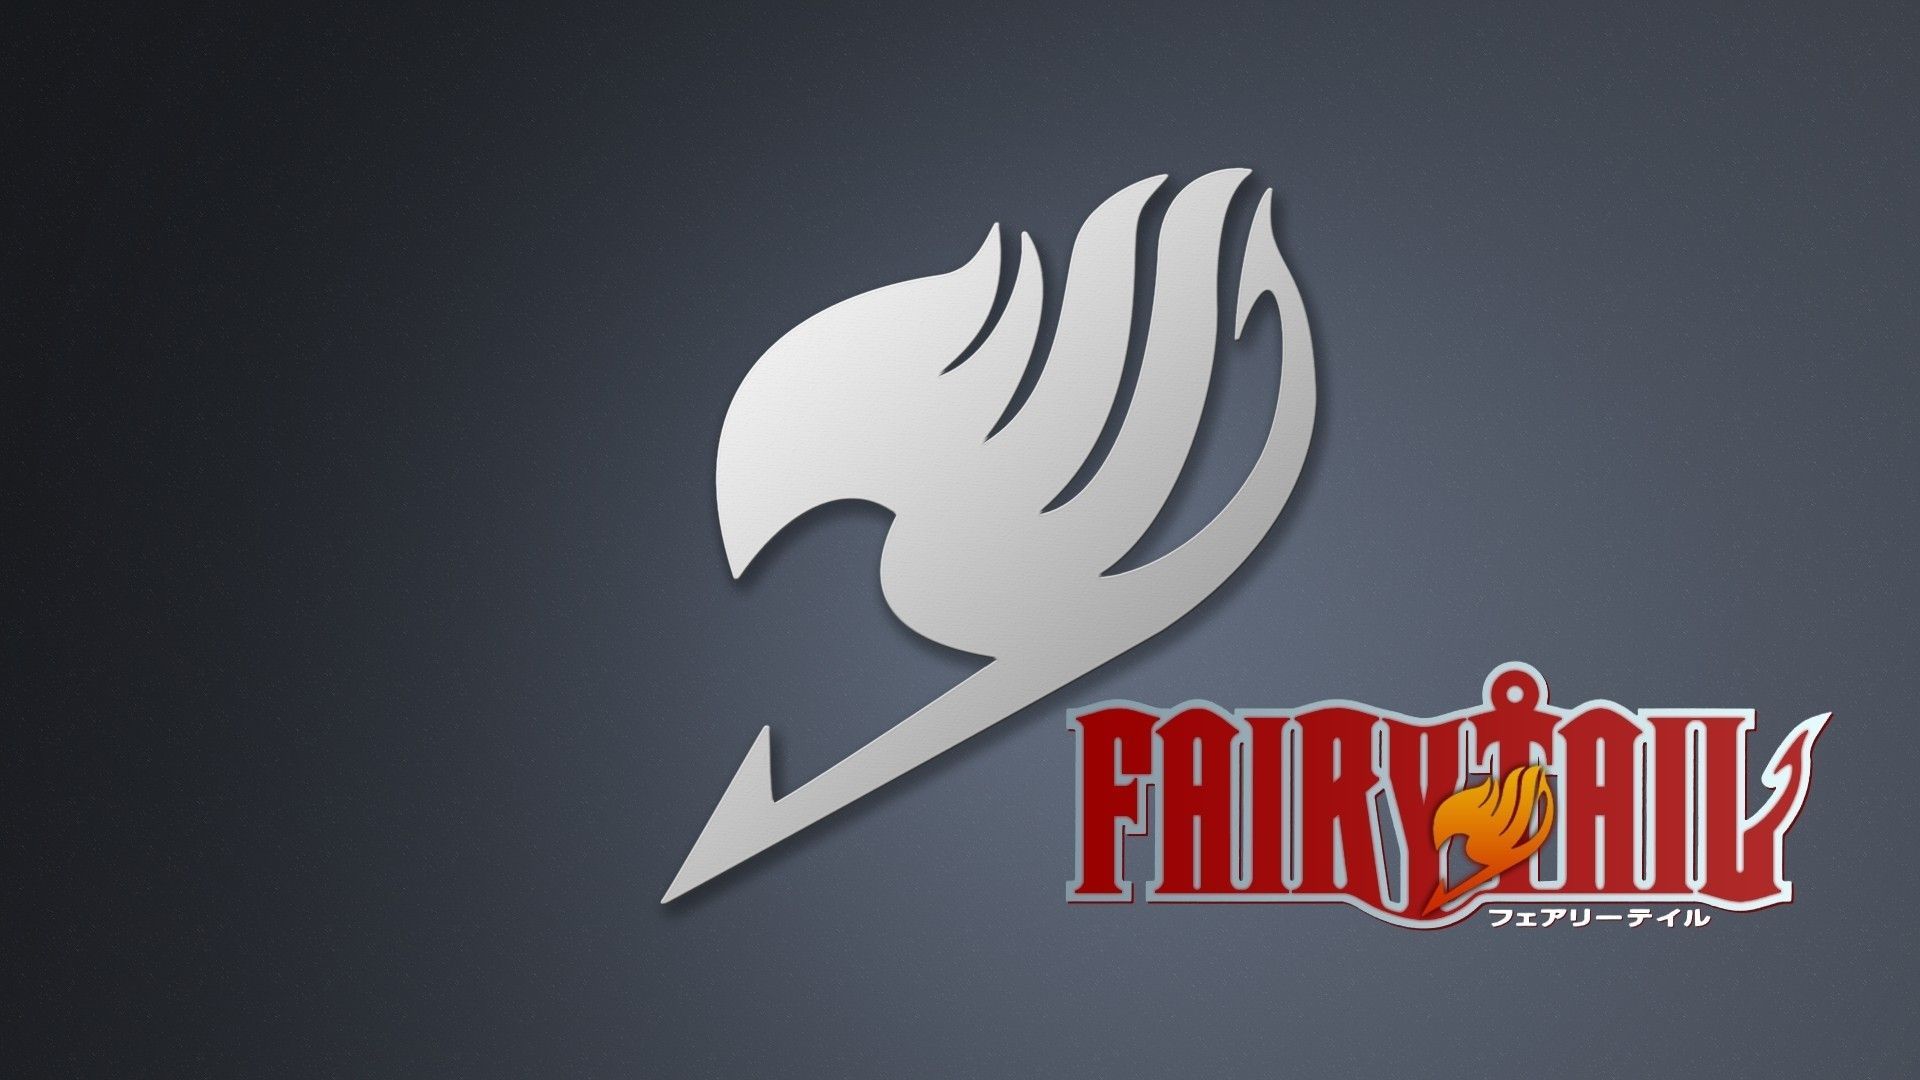 Fairy Tail HD Wallpaper | 1920x1080 | ID:39143